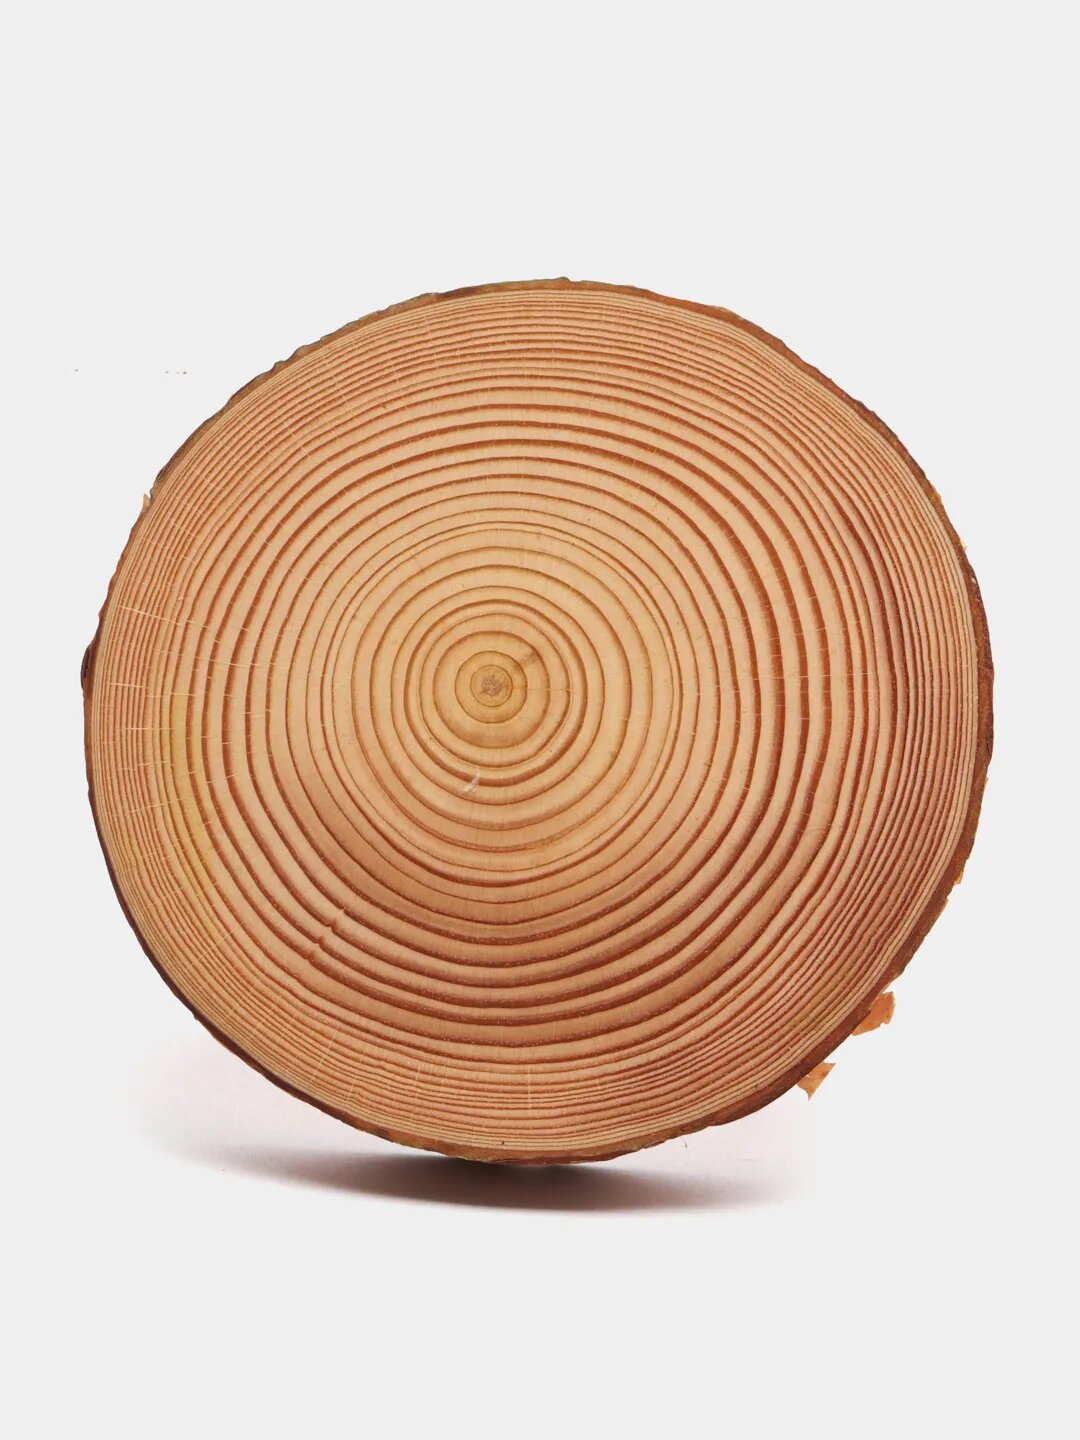 Декоративная подставка из спила дерева, сосна, диаметр 10-11 см.